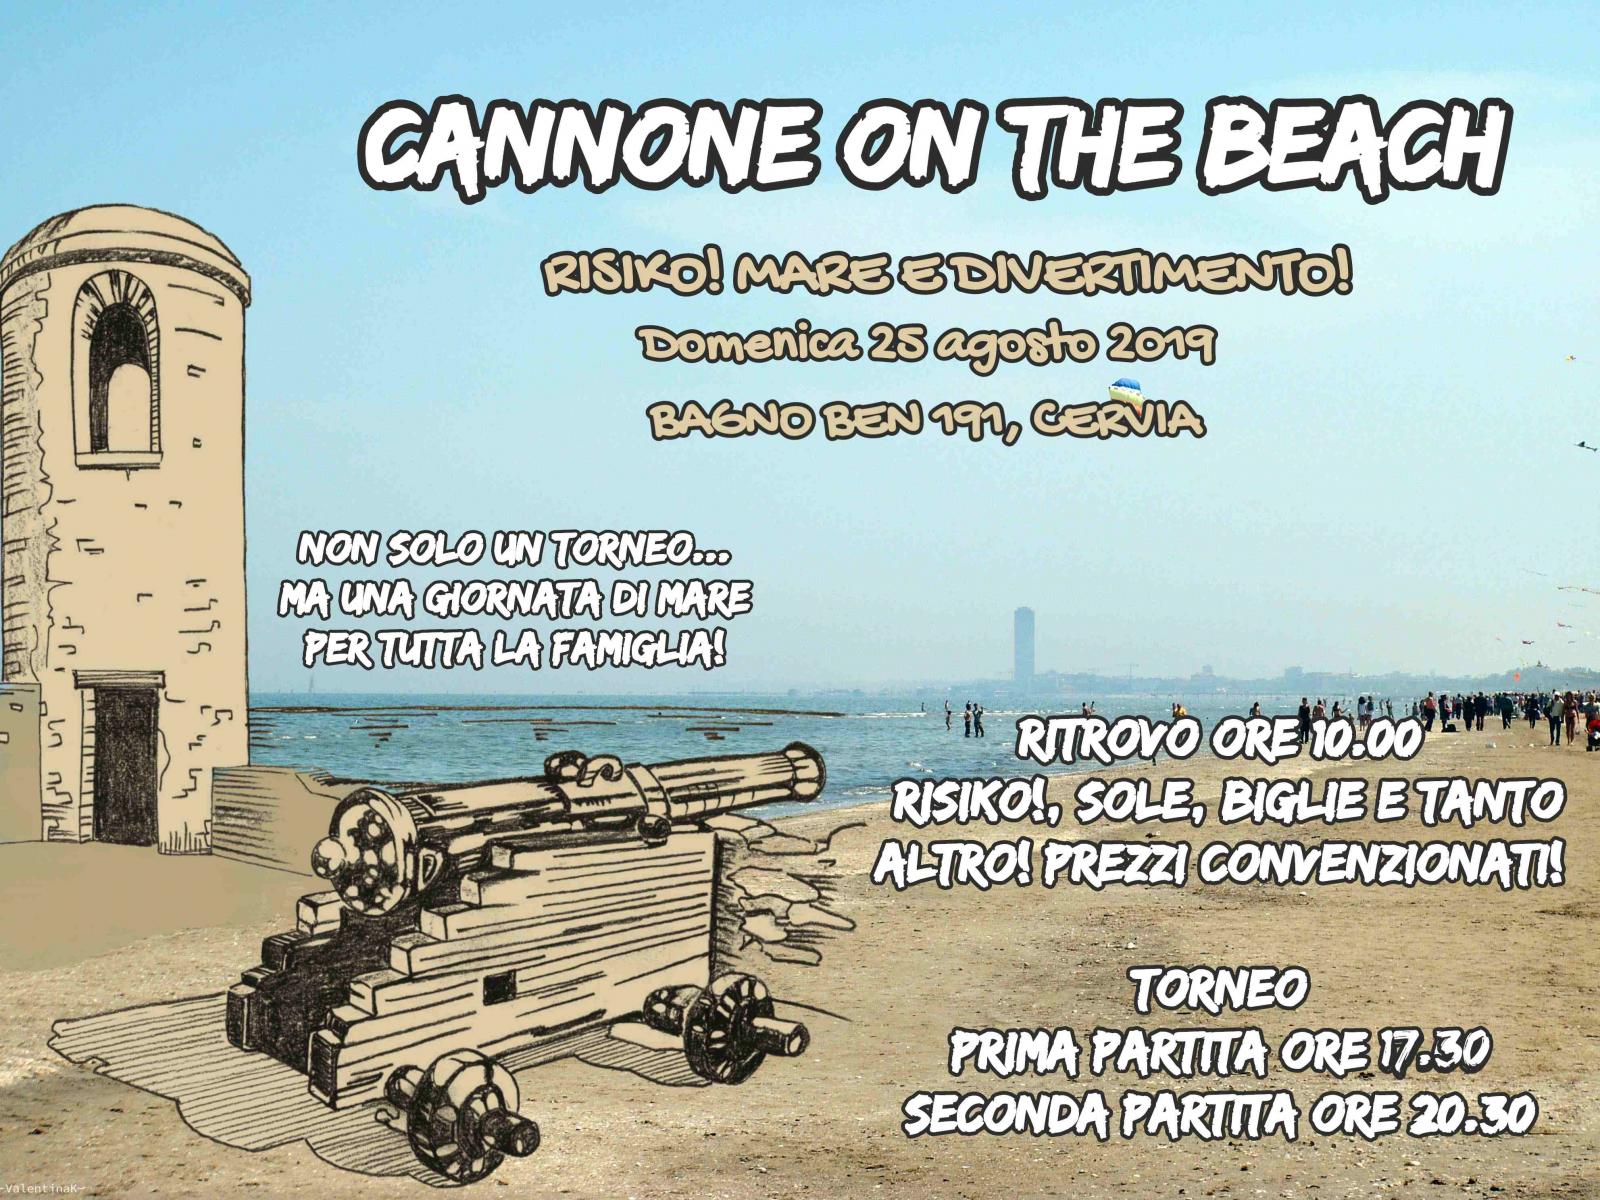 Nome:   Cannone on the Beach 2019 - 25 agosto 2019 (2).jpg
Visite:  172
Grandezza:  340.9 KB